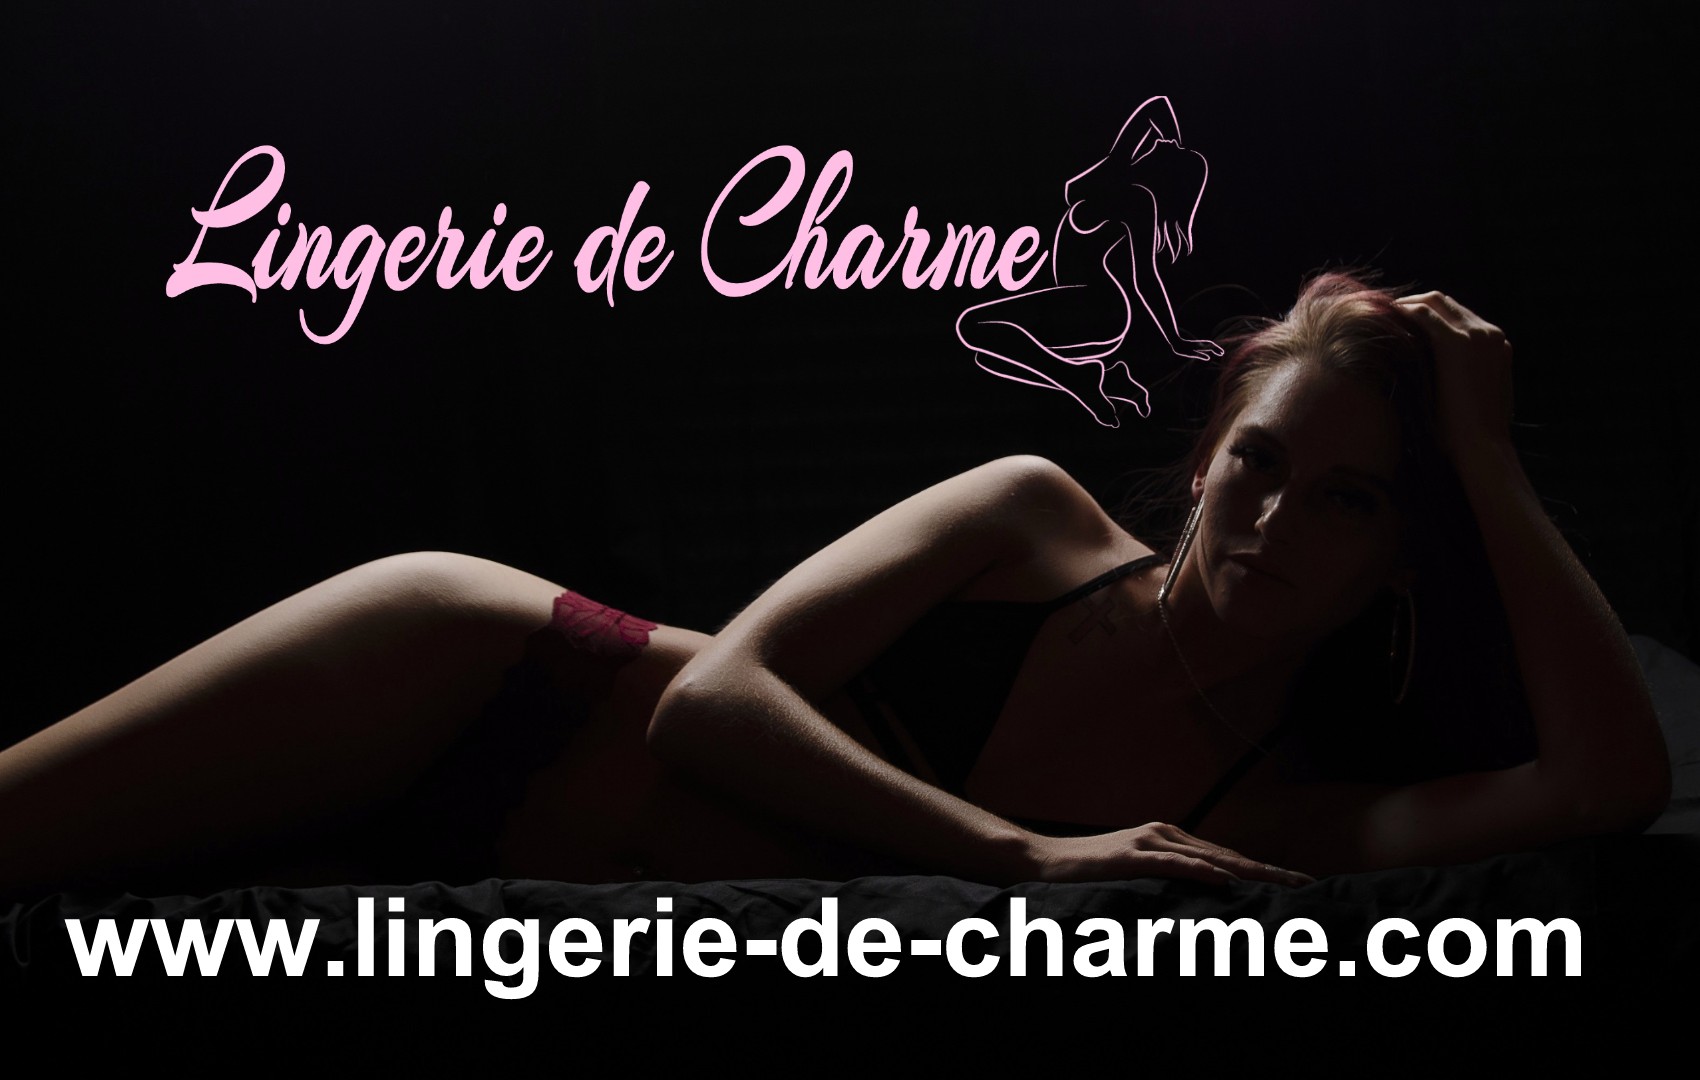 LINGERIE DE CHARME CHENOMMET 16 - LINGERIE SEXY CHENOMMET 16